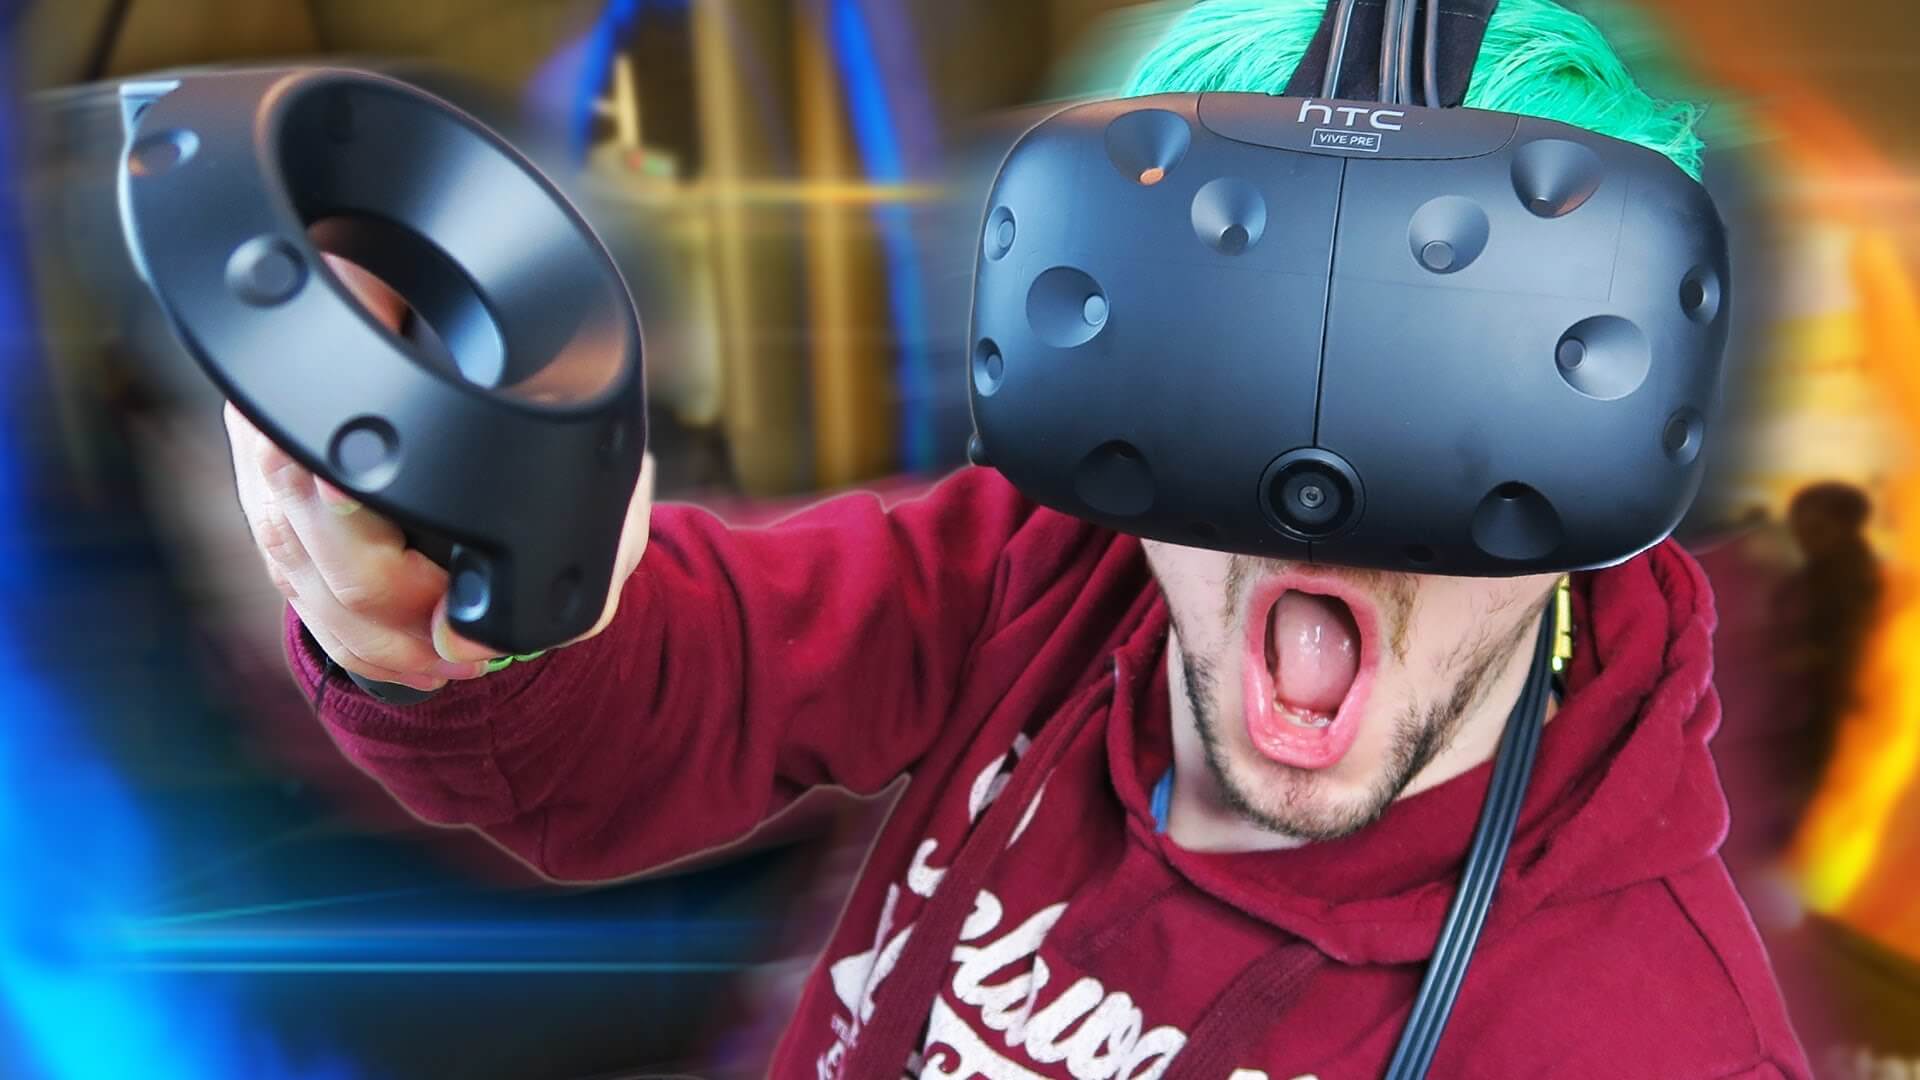 Compilations vr. Шлем vr50. VR аттракцион Окулус 2. Шлем виртуальной реальности. Ребенок в шлеме виртуальной реальности.